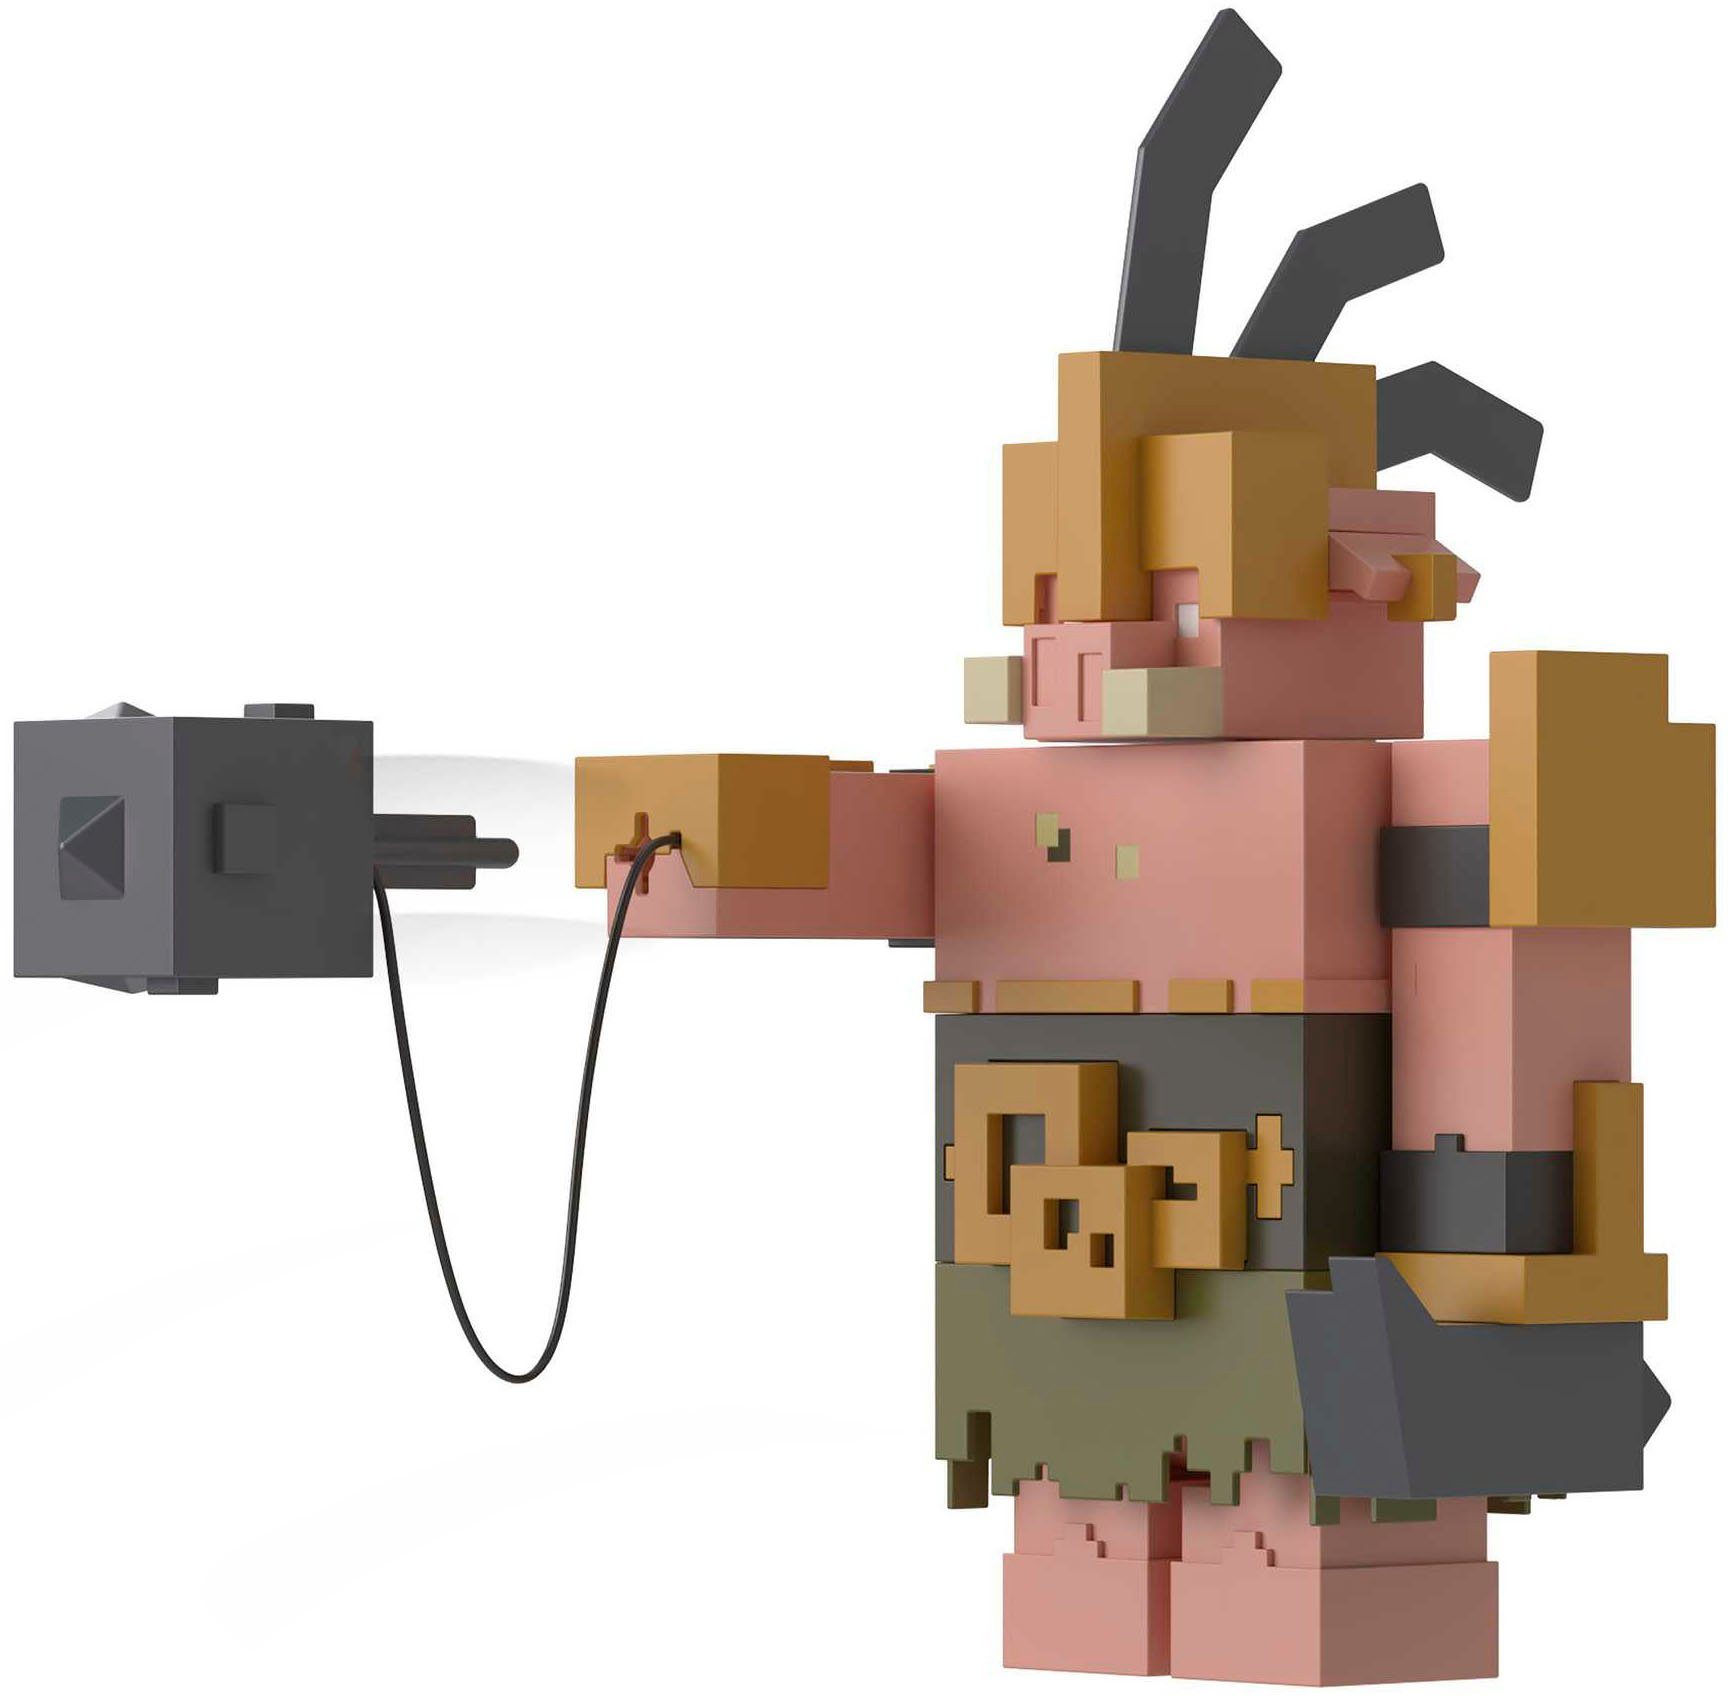 Portalwächter Actionfigur Legends, Minecraft Mattel®